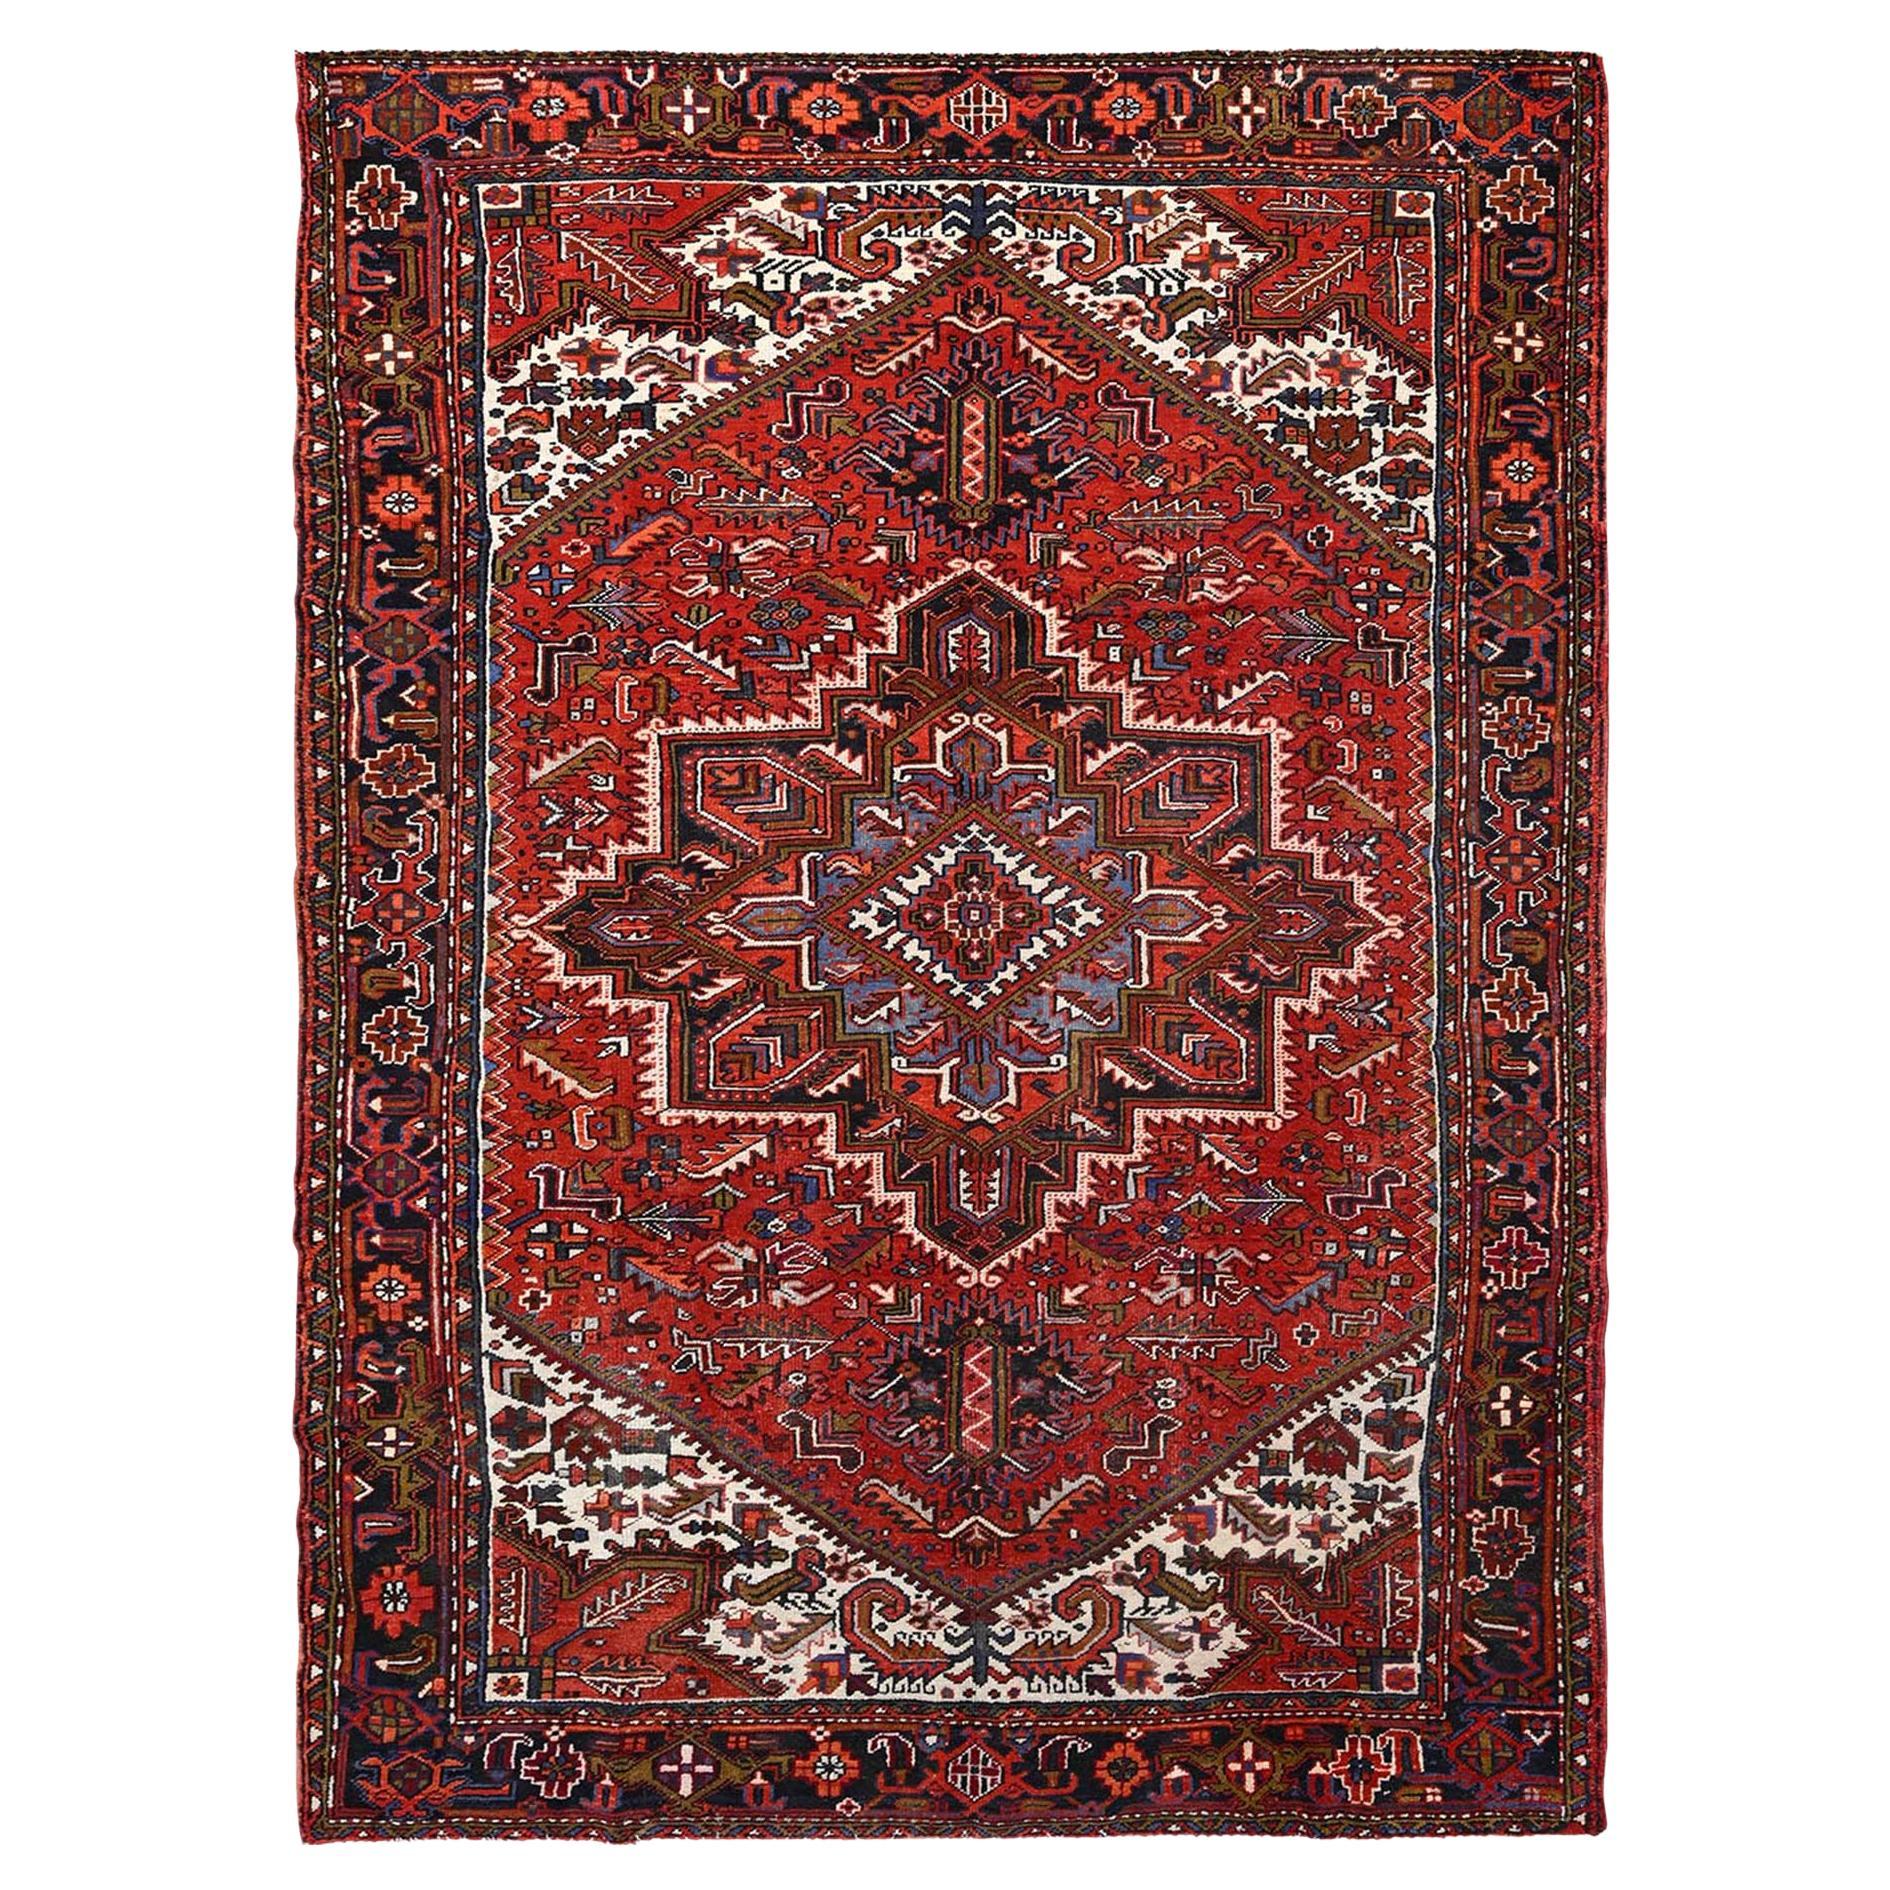 Grand tapis Heriz en laine rouge de style bohème ancien, noué à la main, à l'aspect rustique